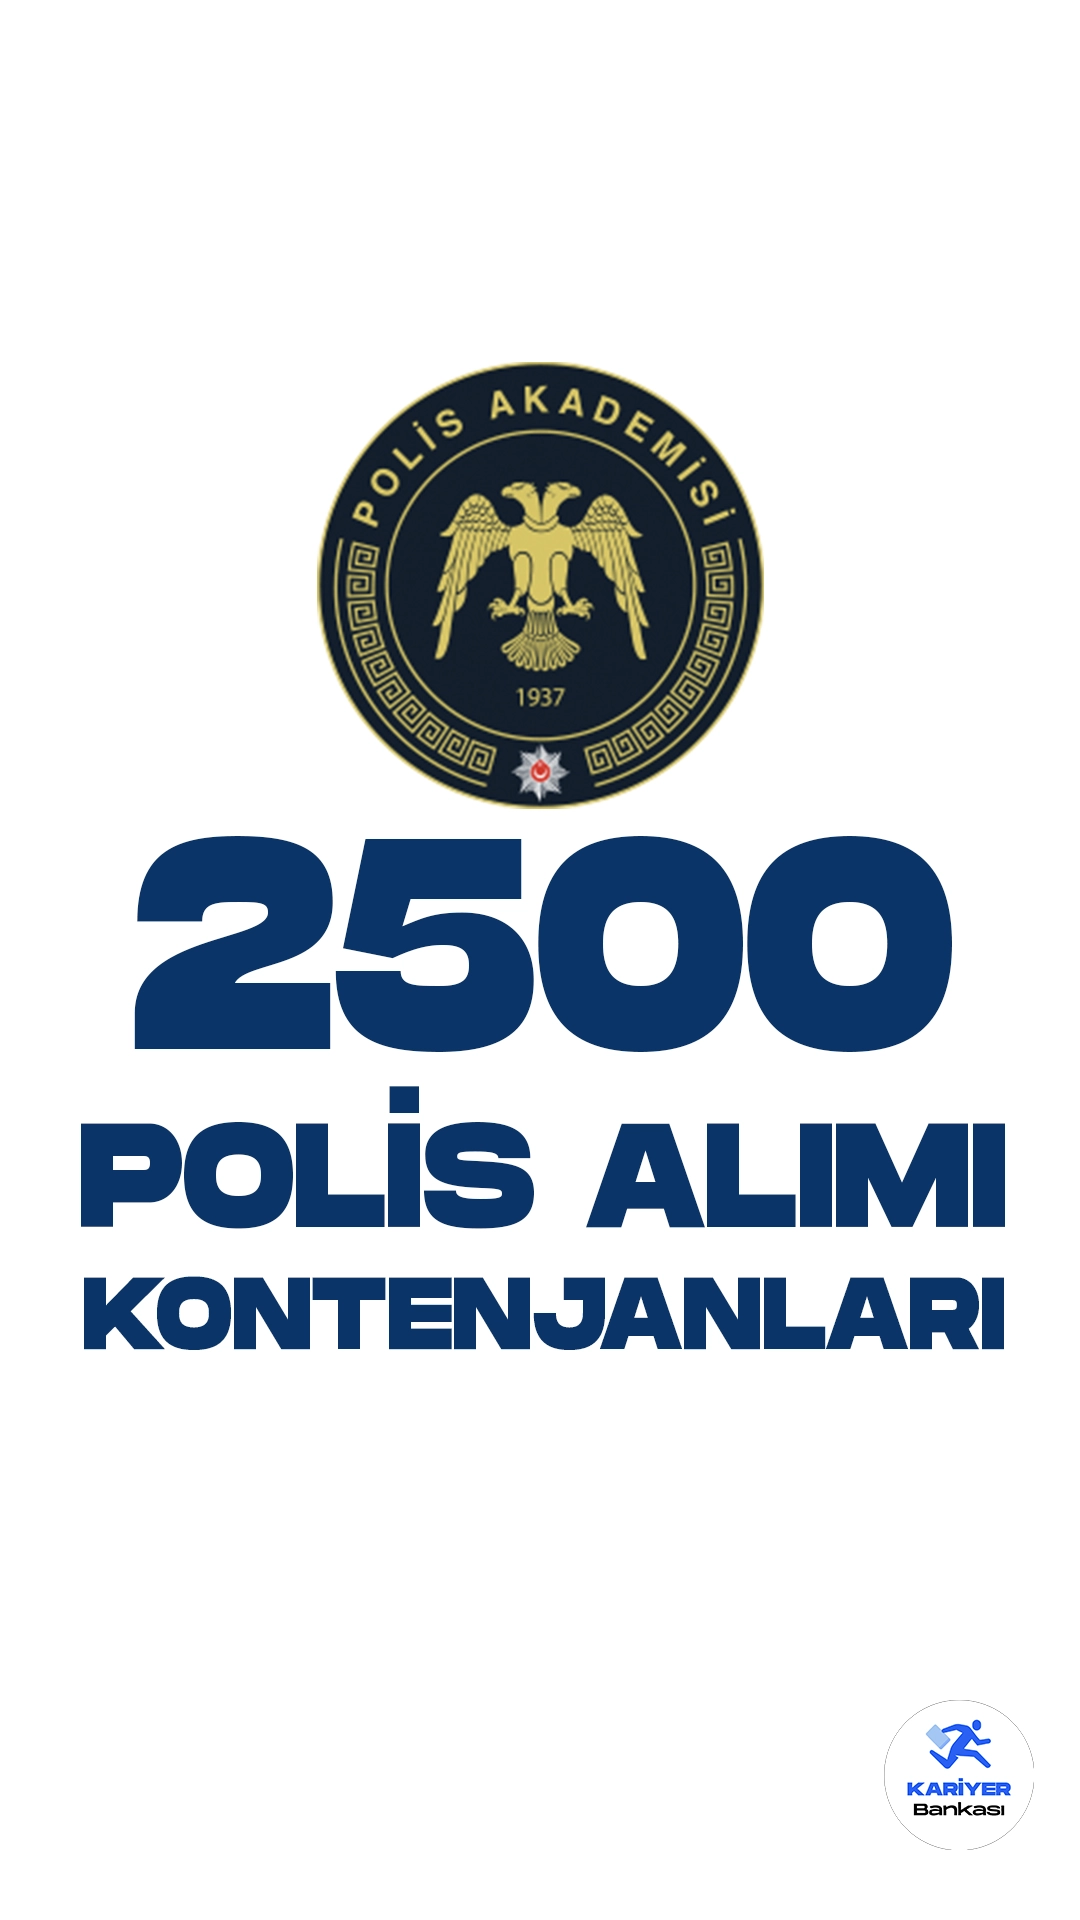 2500 polis alımı başvuruları işlemleri devam ediyor. Kontenjan dağılımı ve başvuru sayfasında dair detaylar bu haberimizde.